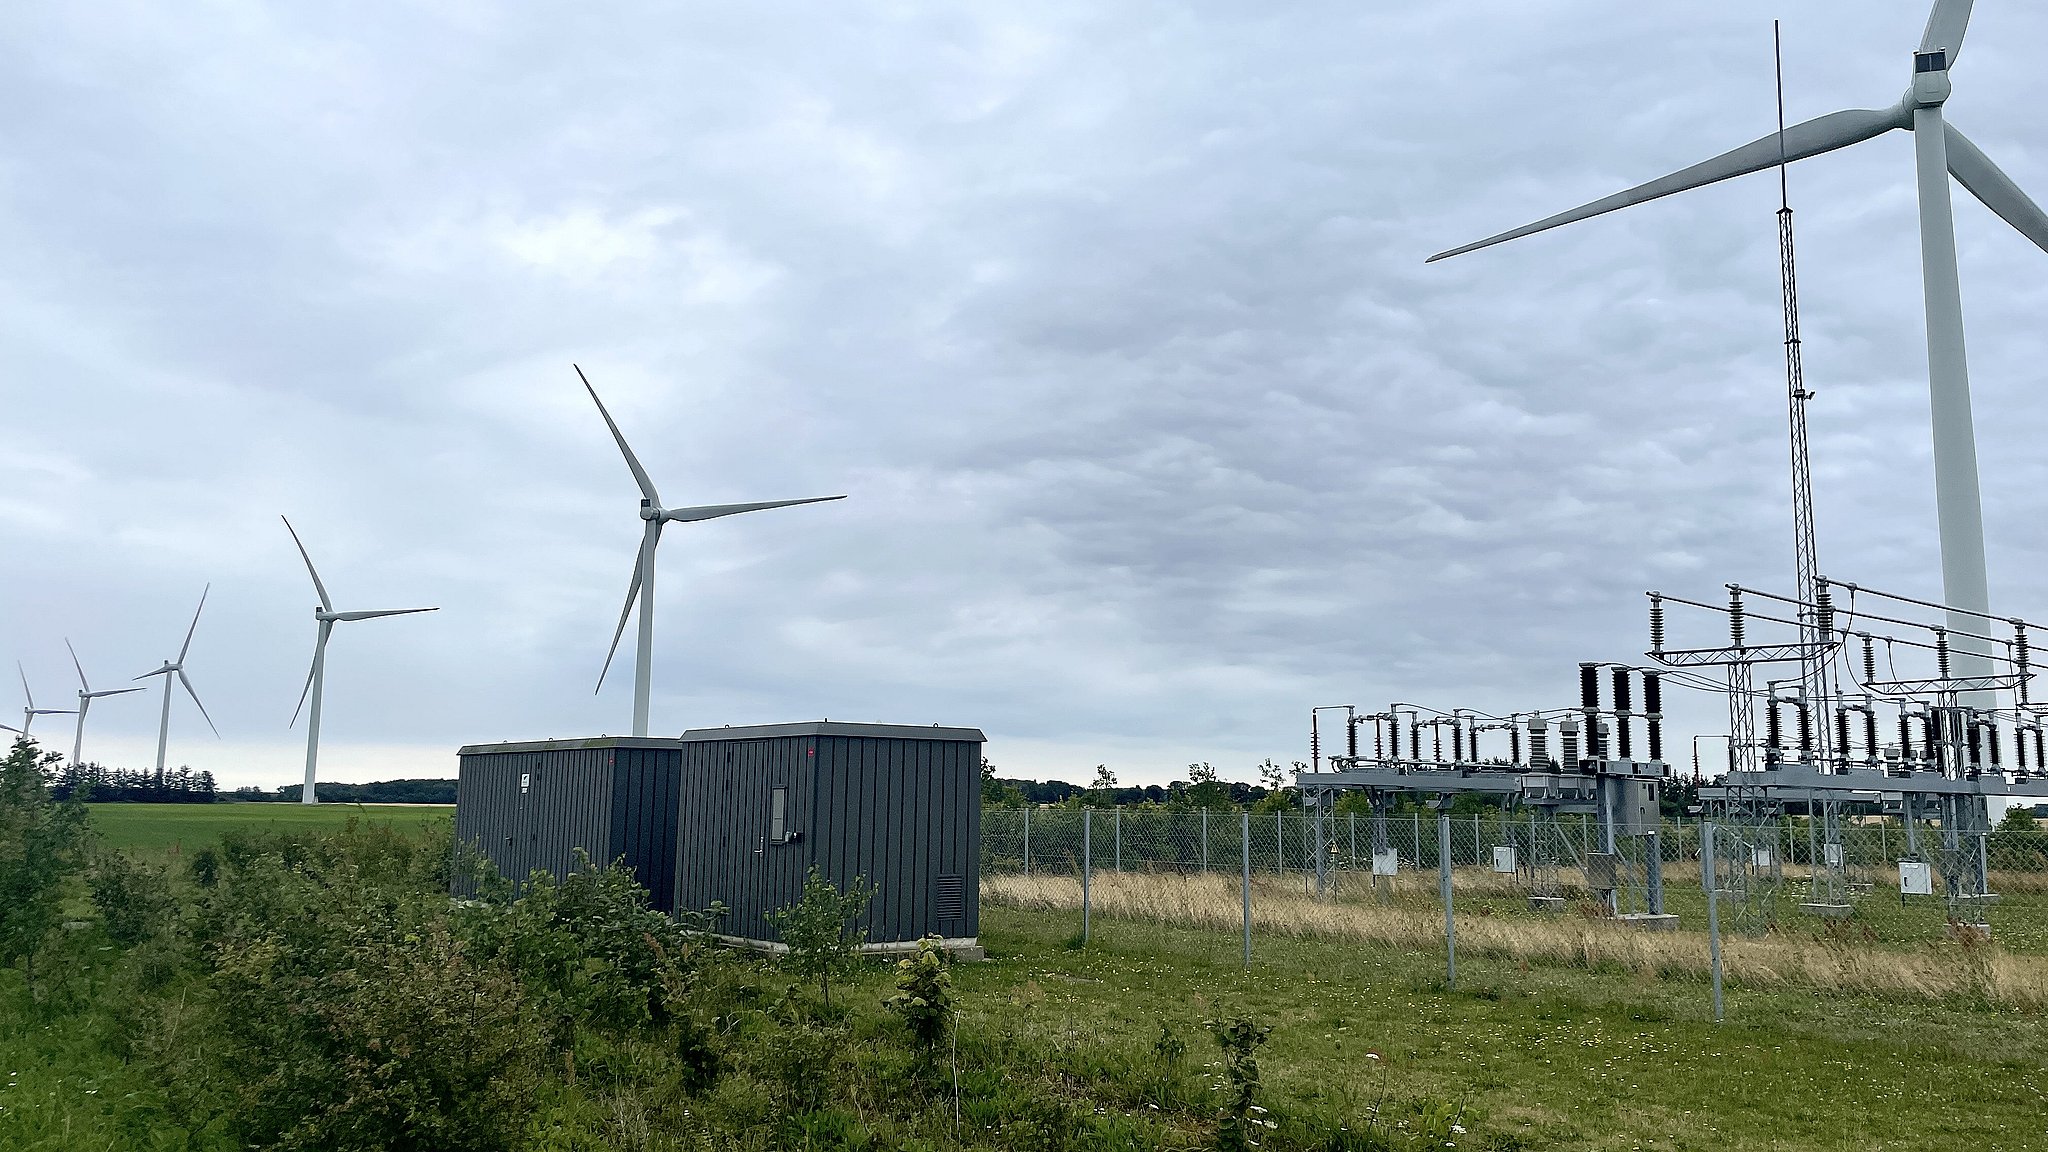 Blandt andet ejer Gert Kristensen en del af de vindmøller, der er en del af vindmølleparken i Lyngdrup.